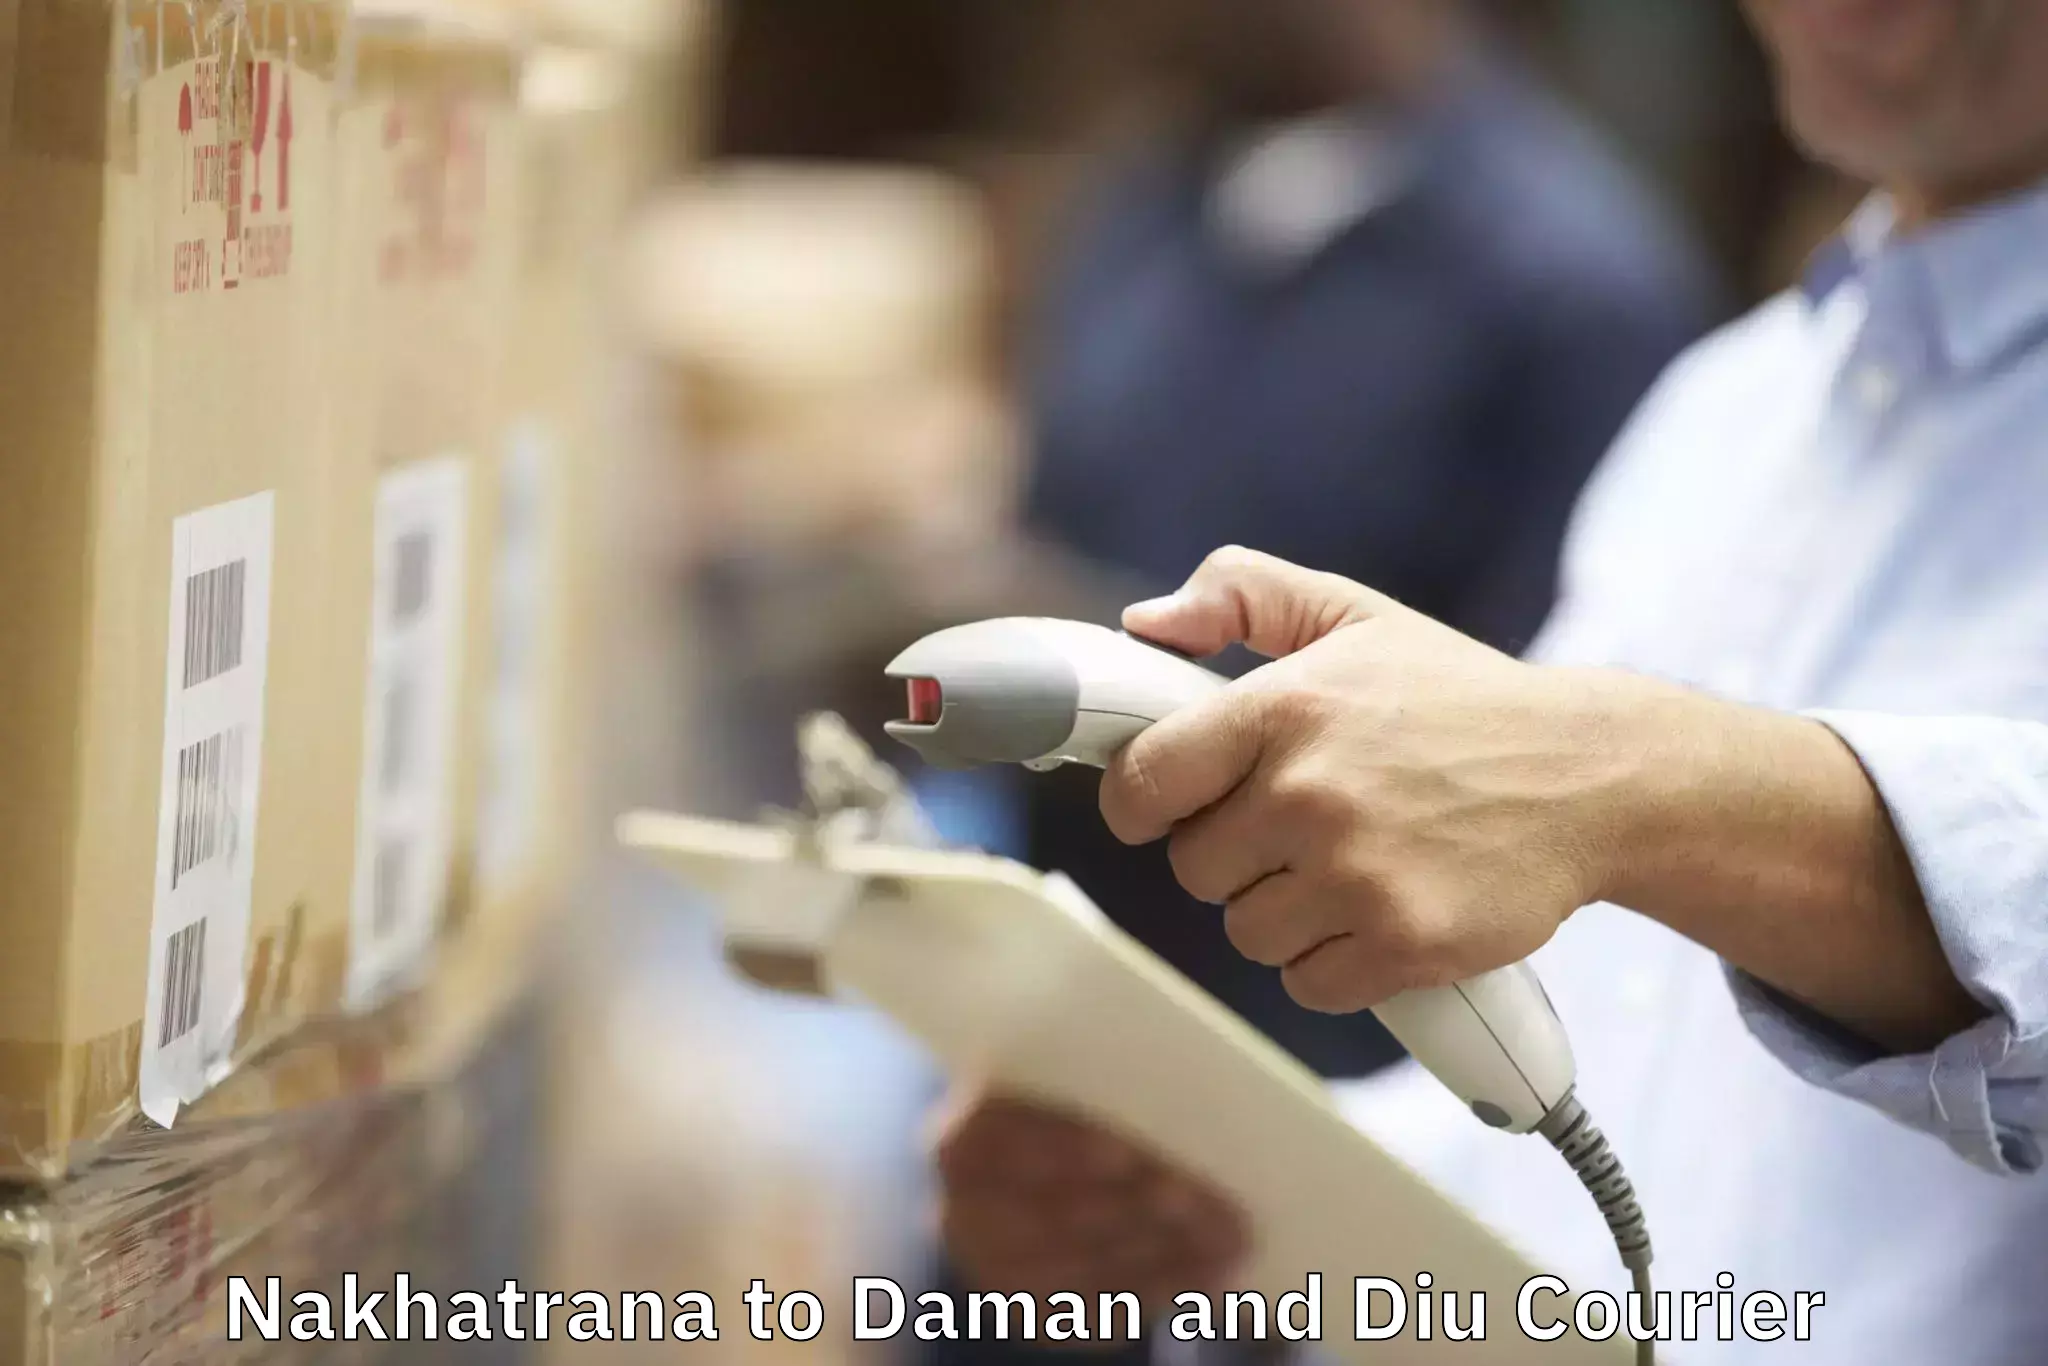 Moving and handling services Nakhatrana to Daman and Diu